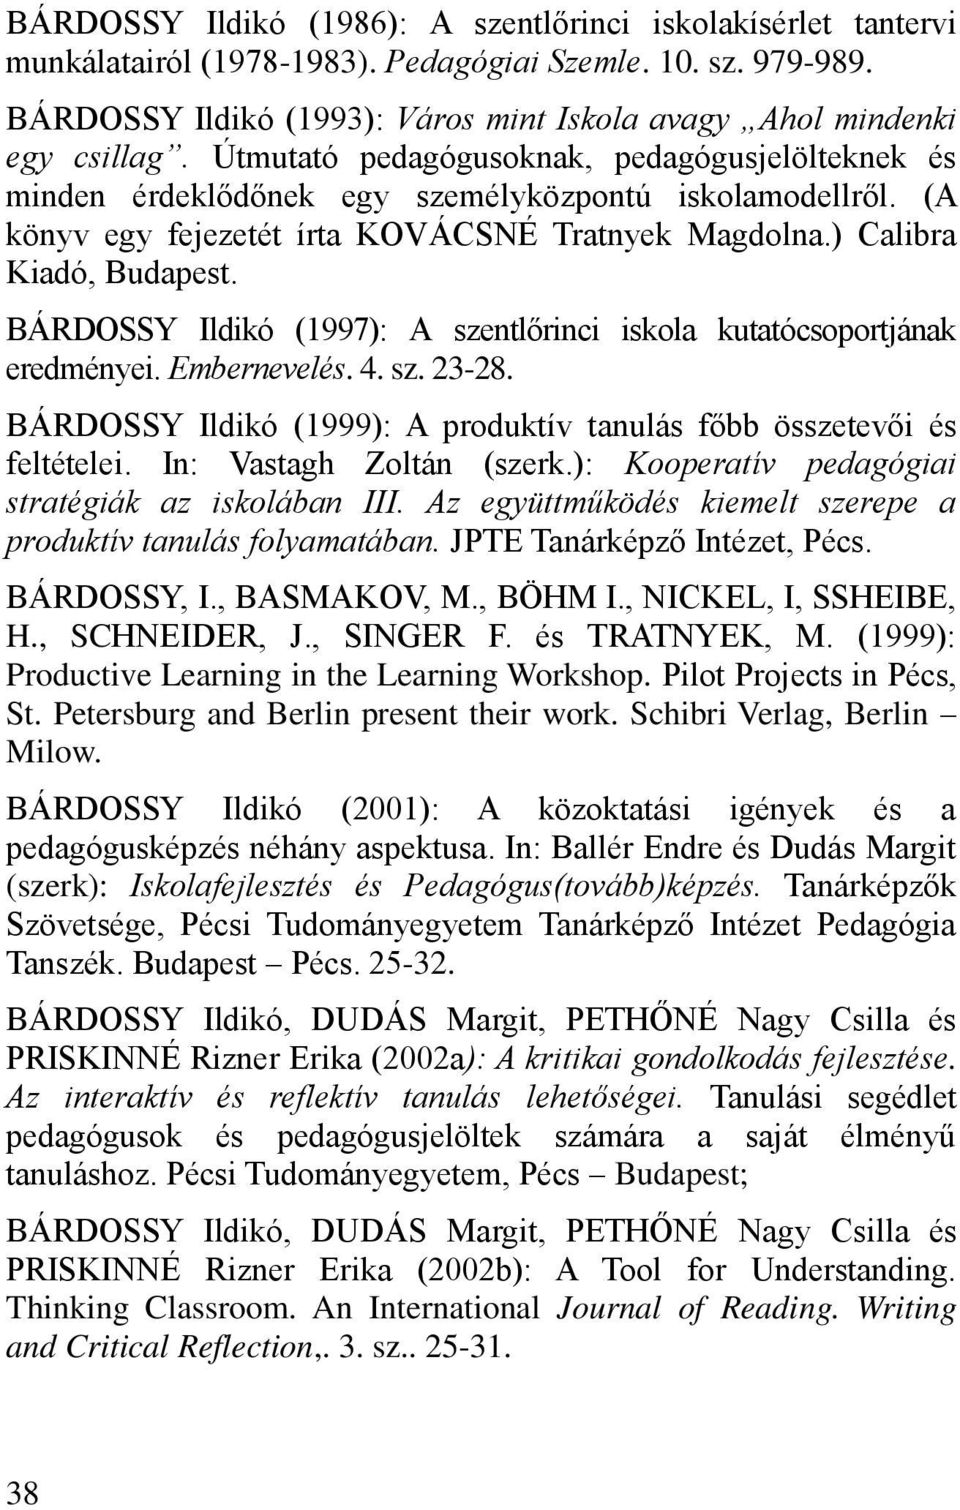 BÁRDOSSY Ildikó (1997): A szentl rinci iskola kutatócsoportjának eredményei. Embernevelés. 4. sz. 23-28. BÁRDOSSY Ildikó (1999): A produktív tanulás f bb összetev i és feltételei.